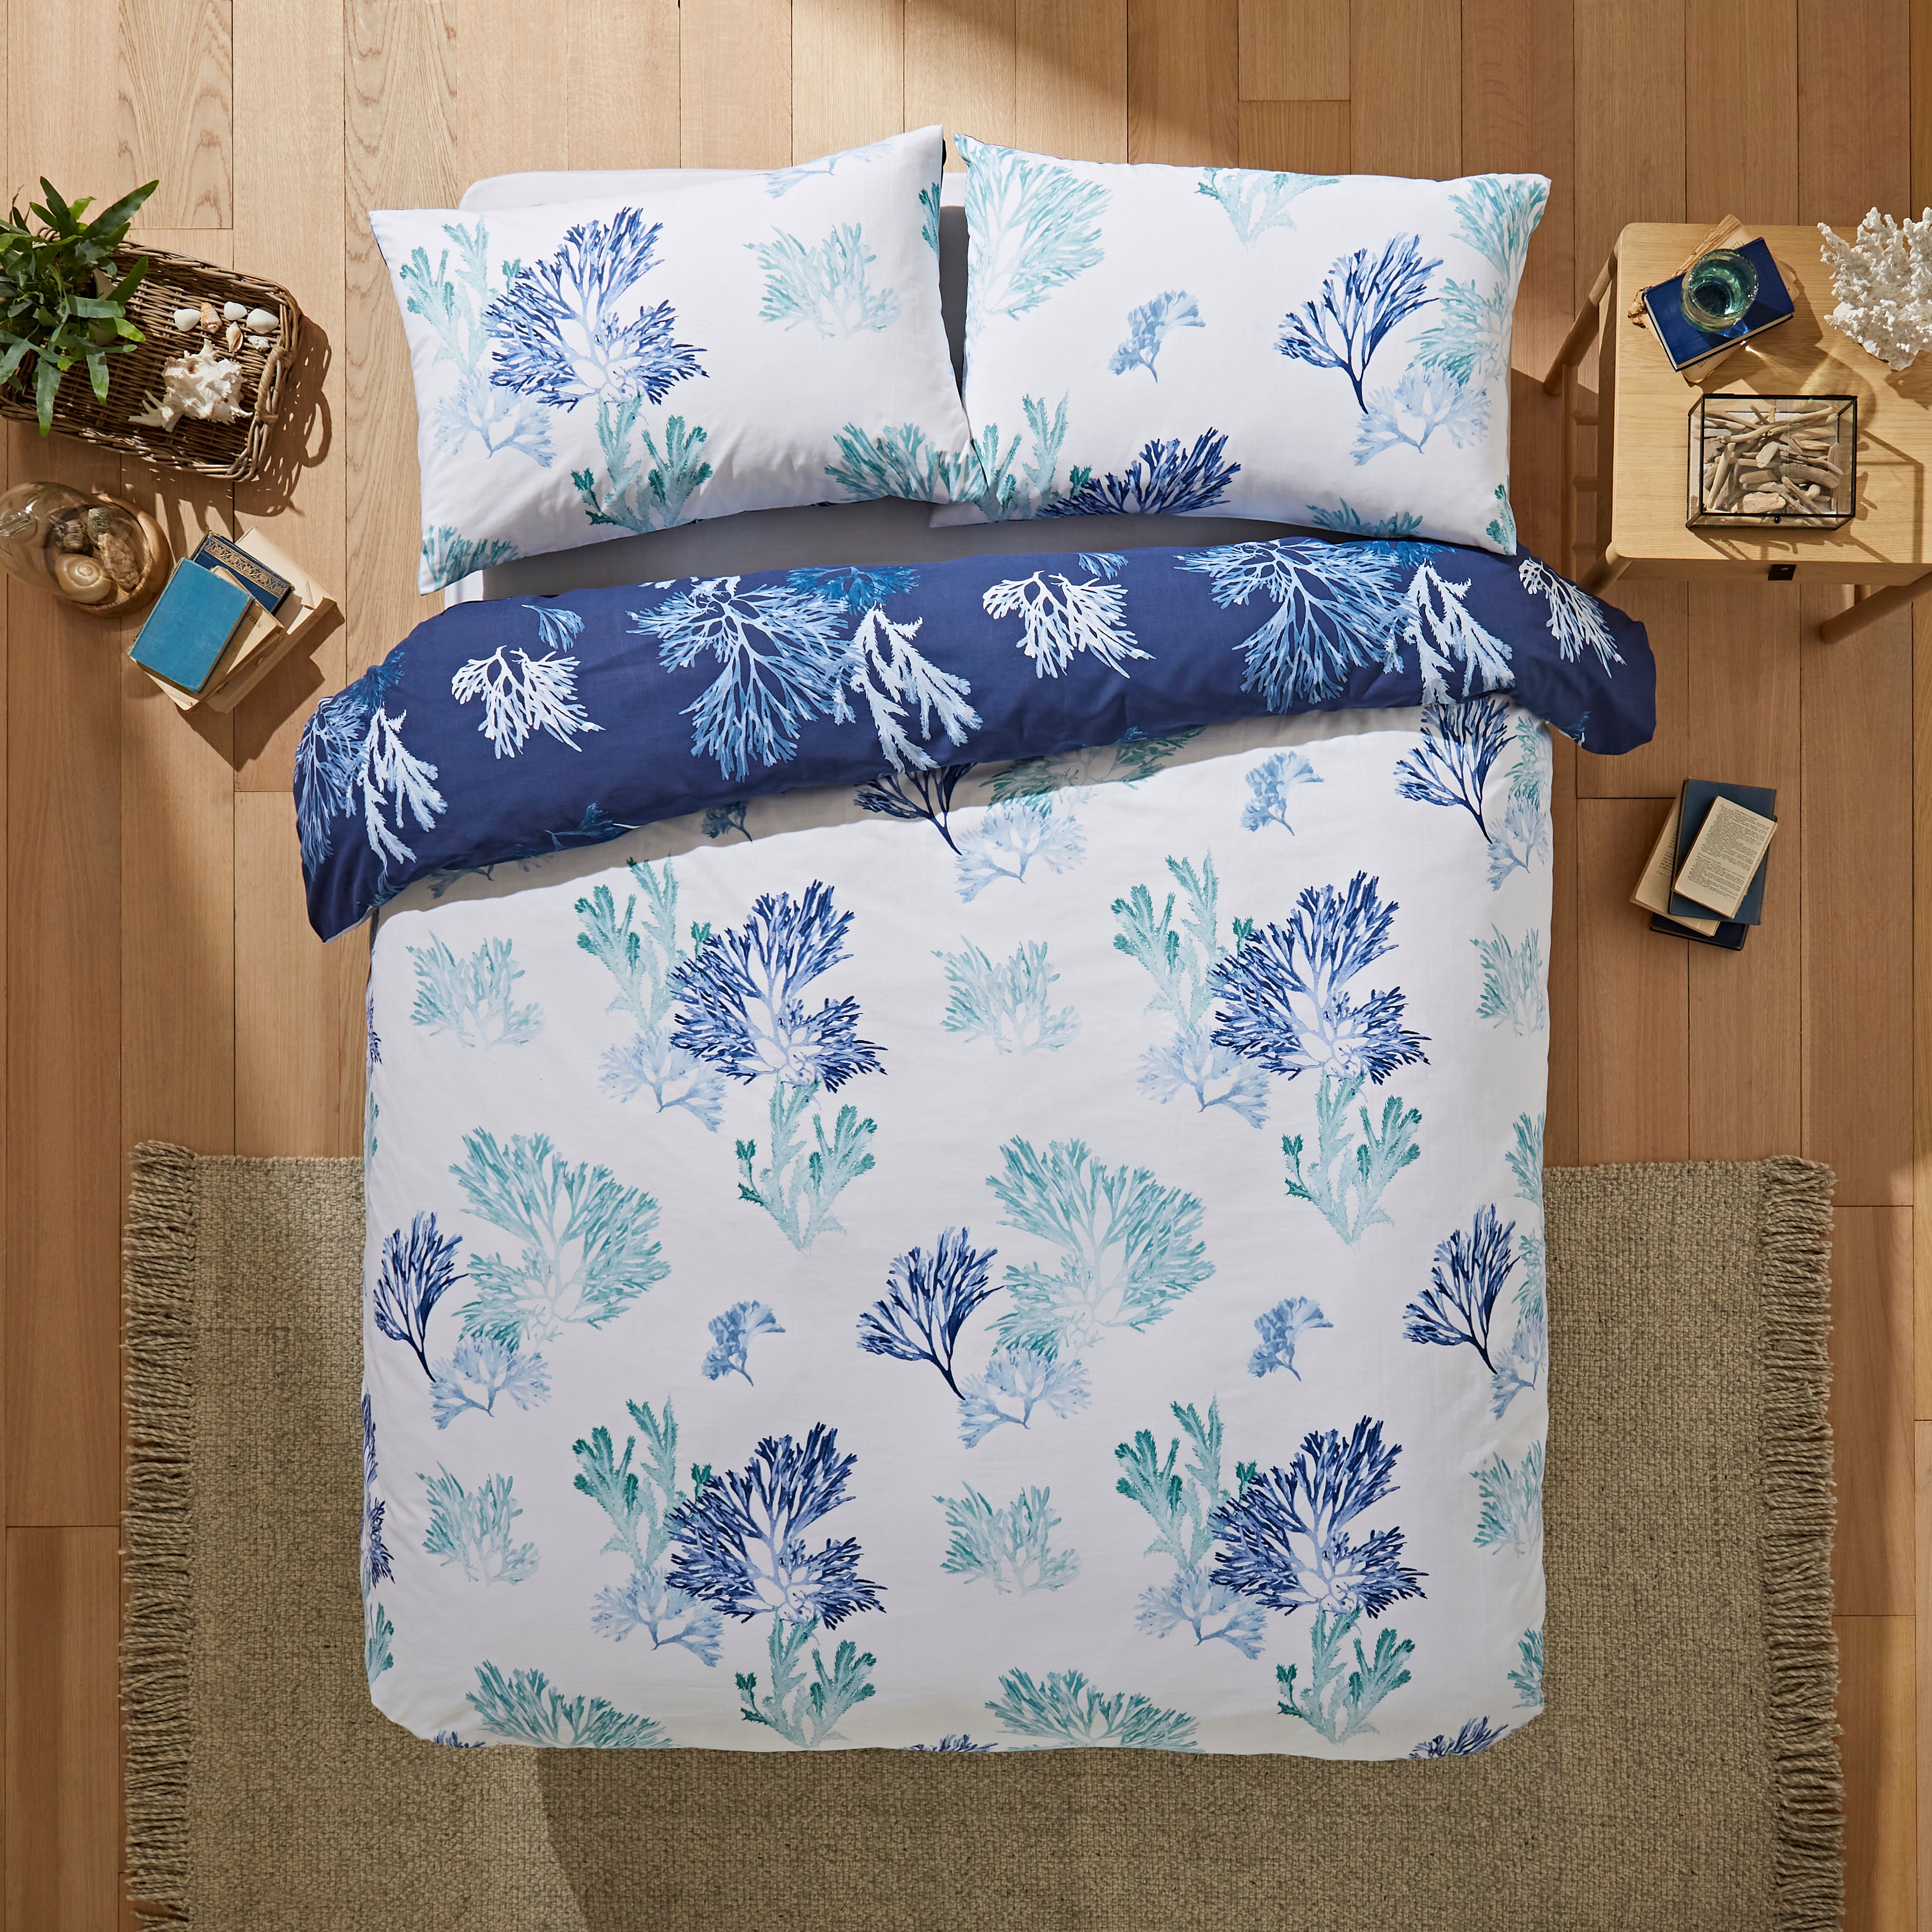 Shoreline Blue Duvet Cover And Pillowcase Set Bluewhite